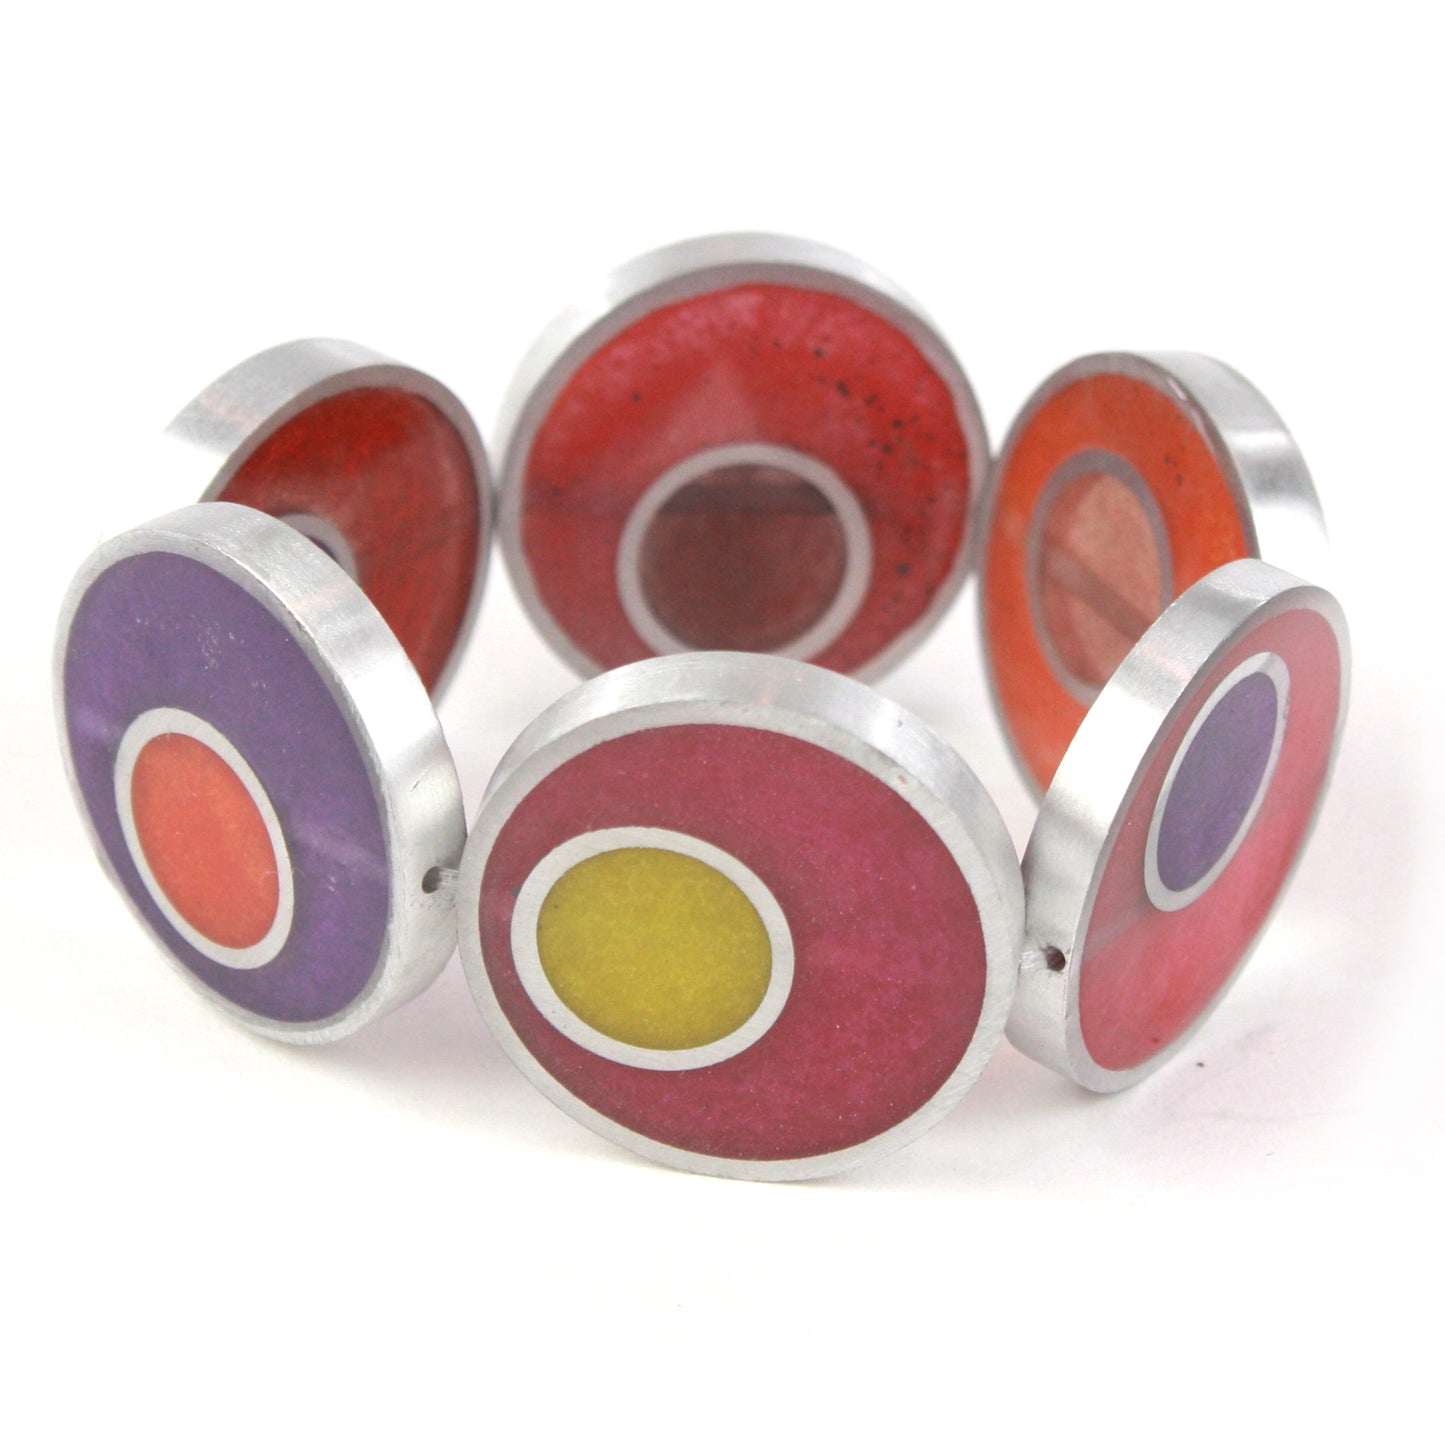 Resinique double circle bracelet - Reds, oranges and purples